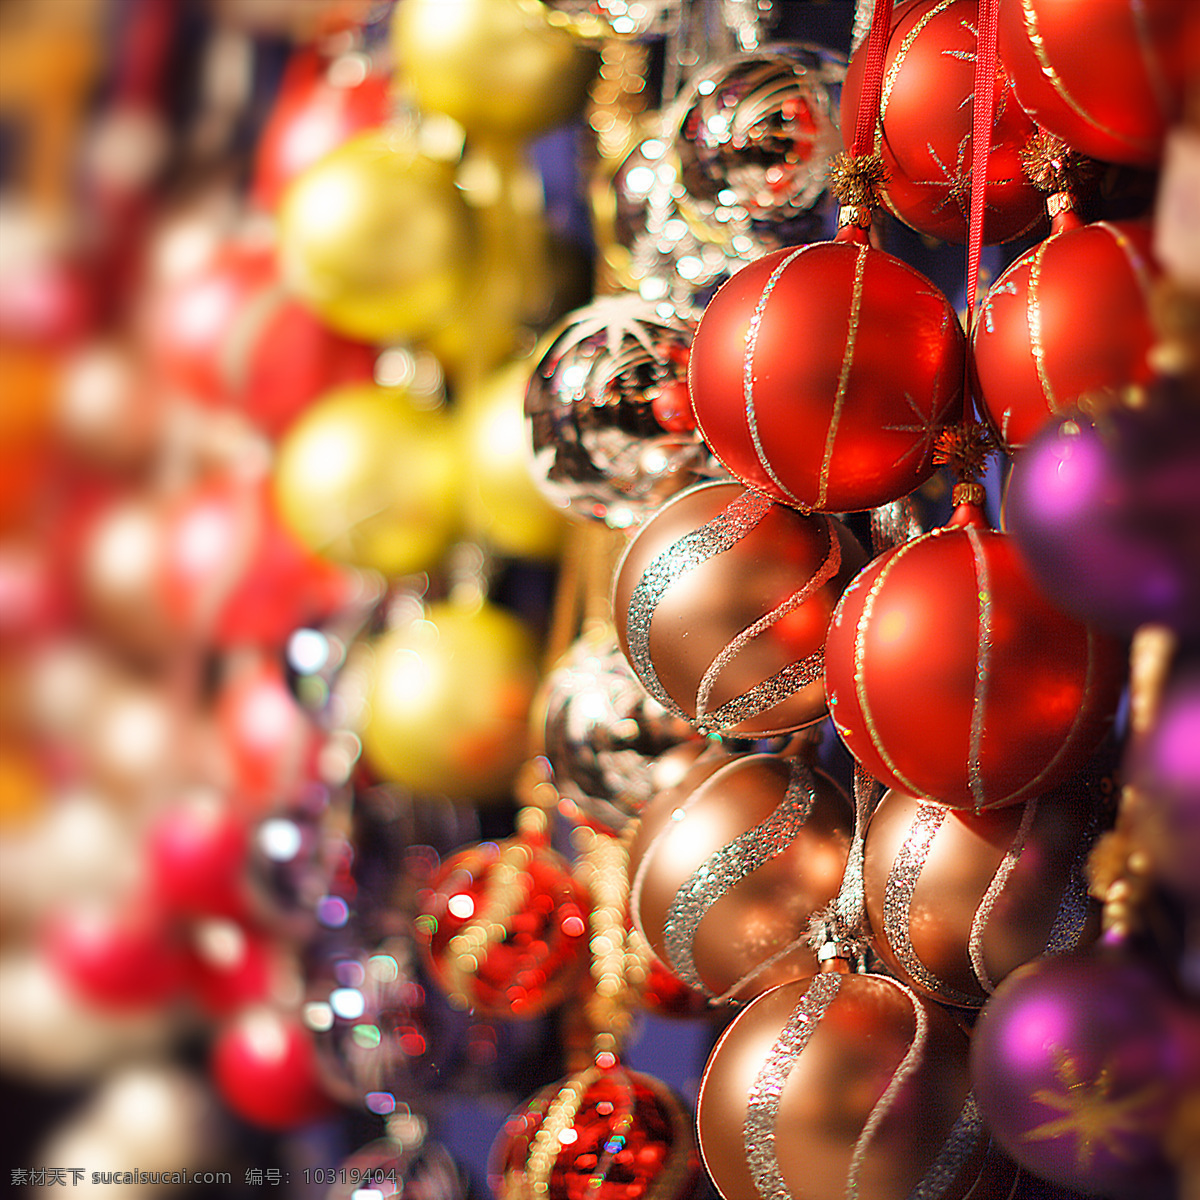 圣诞节 球体 挂件 节日 红色球体 圣诞节挂件 圣诞节饰品 圣诞节图片 生活百科